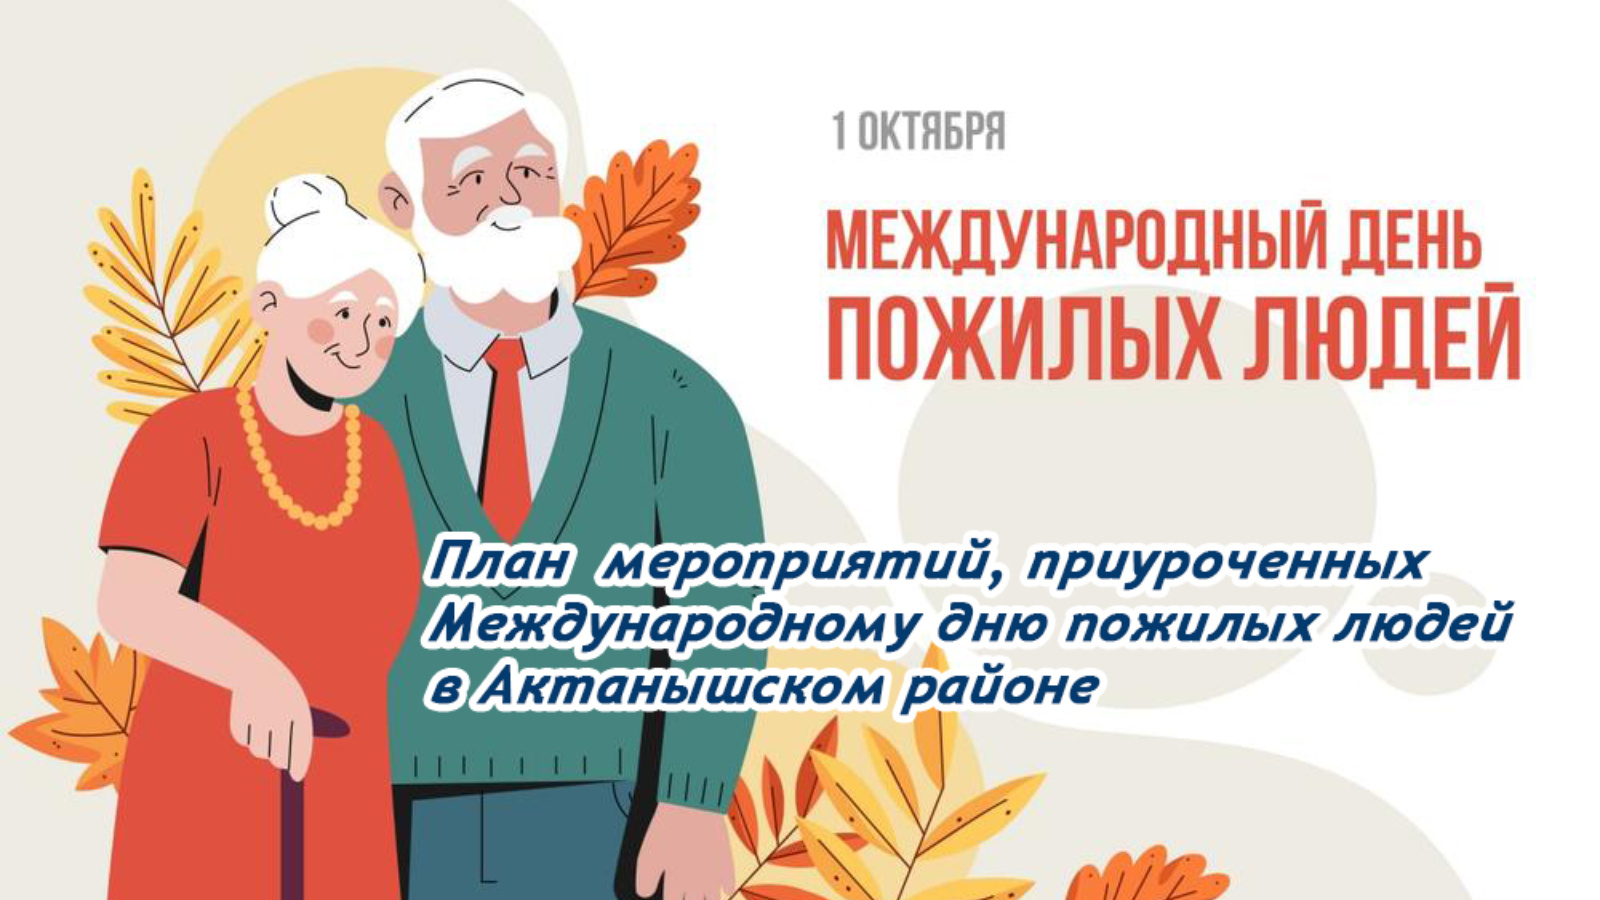 Октября день пожилого человека. Международный день пожилого человека. 1 Октября день пожилого человека. С праздником пожилого человека. Открытка ко Дню пожилых людей.